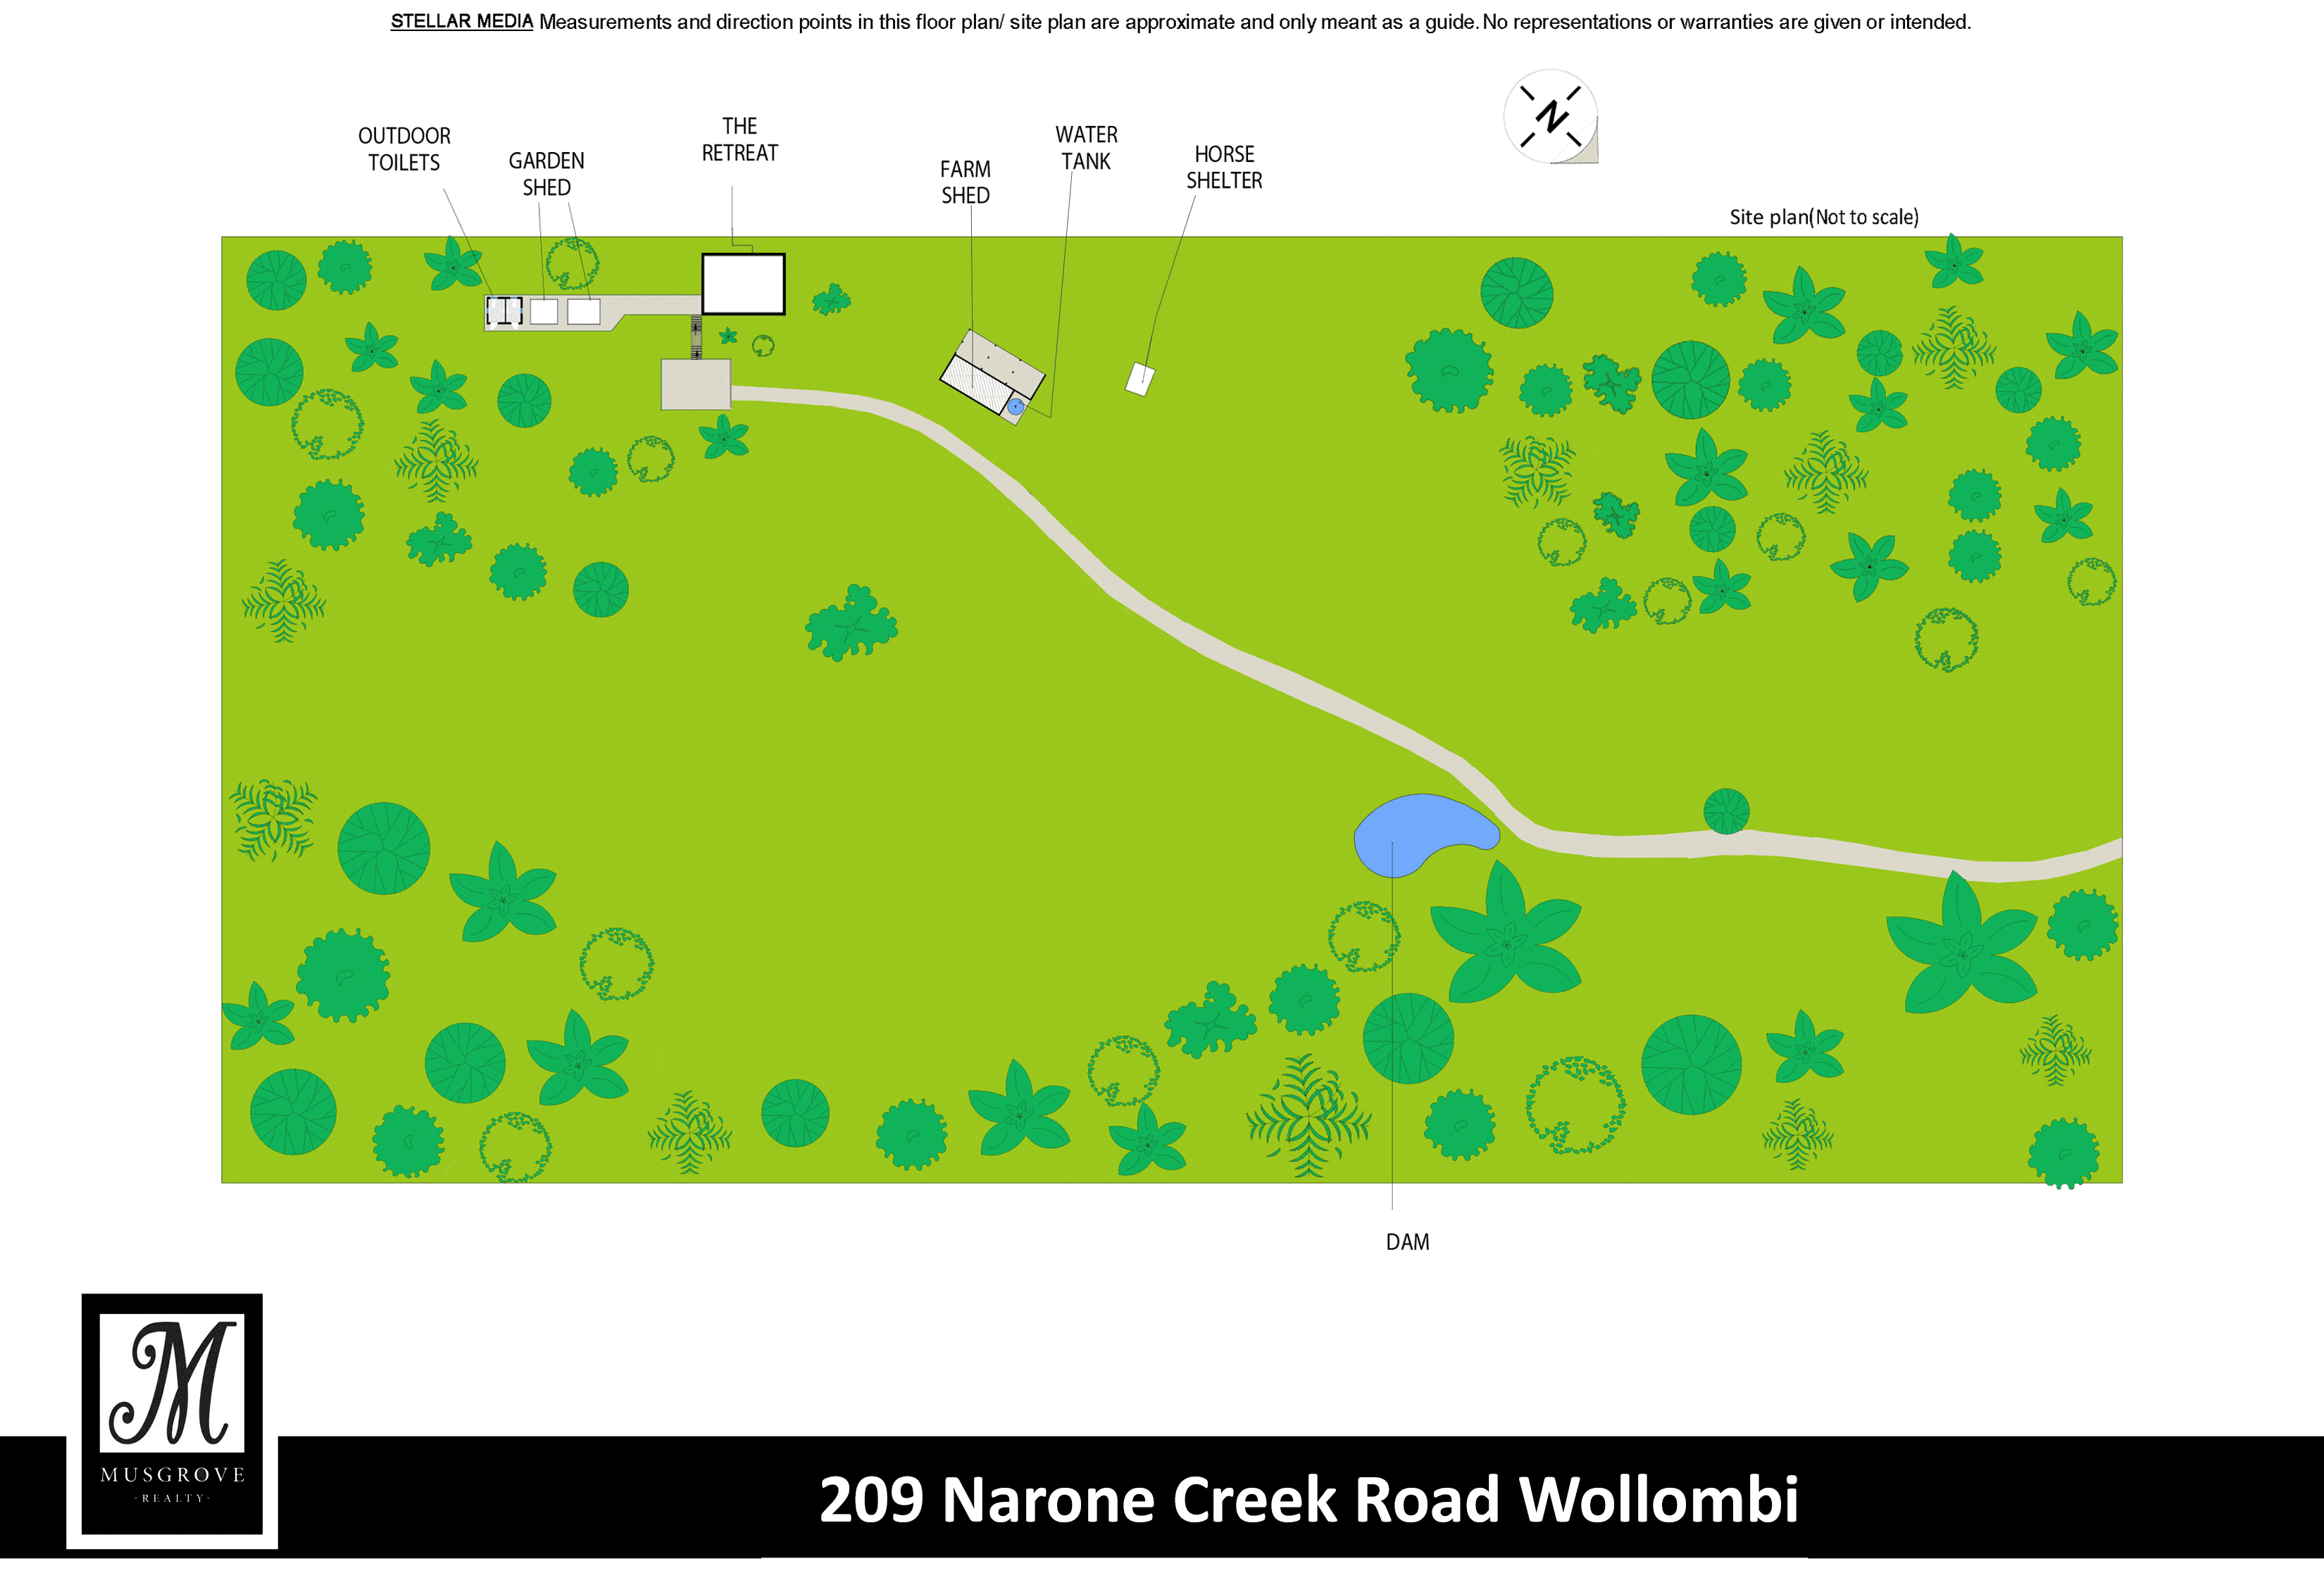 209 NARONE CREEK ROAD, Wollombi, NSW 2325